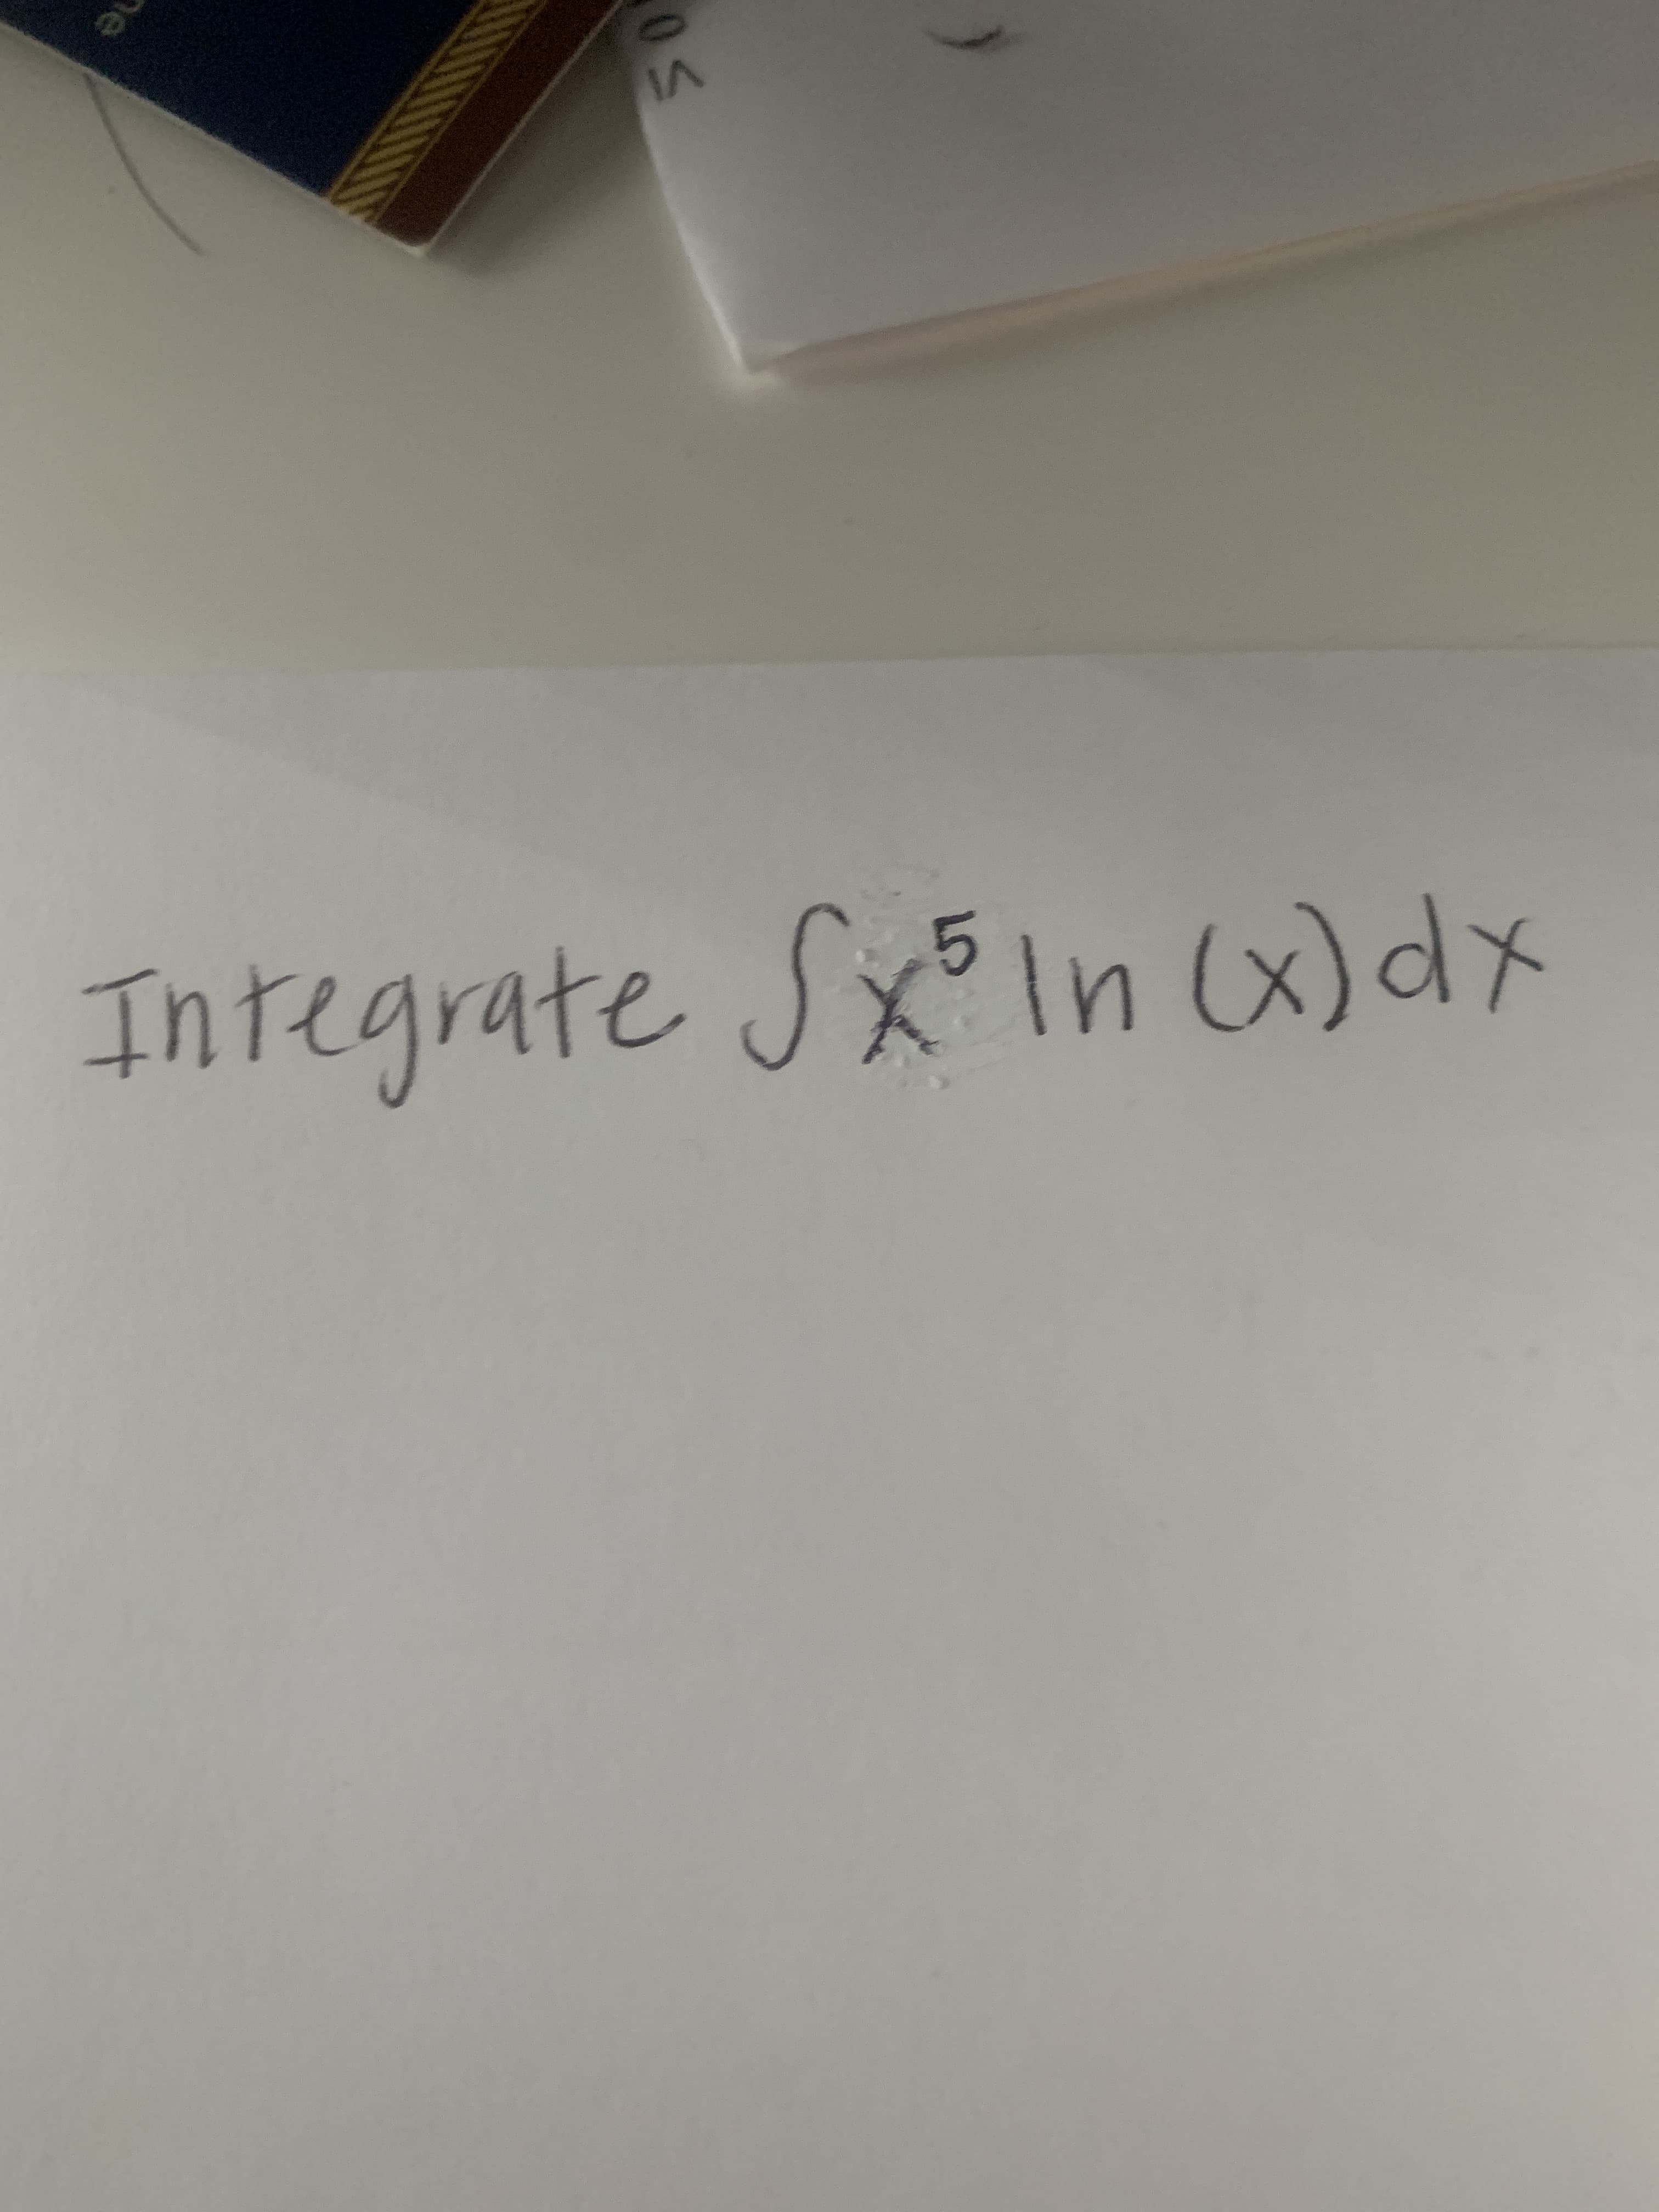 Integrate Sxln x)dx
